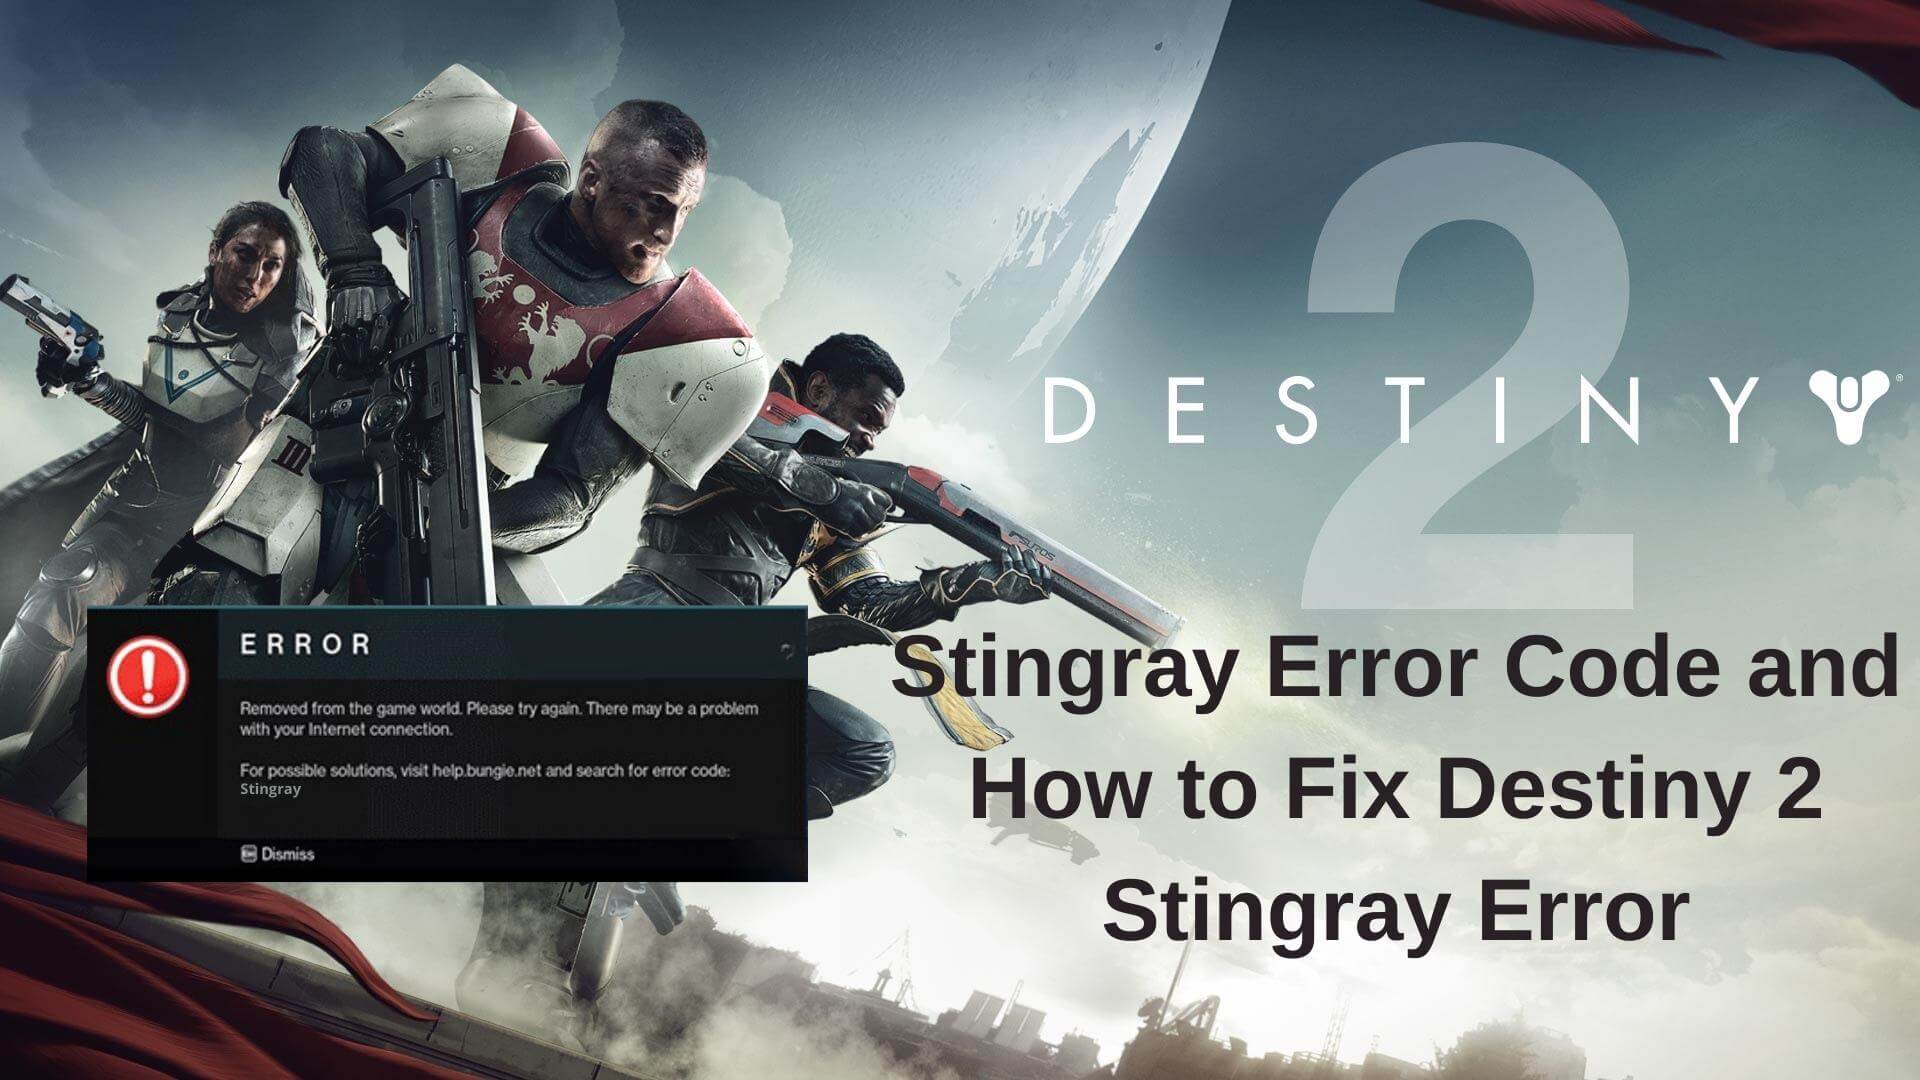 Destiny 2 Stingray Error Code and How to Fix Destiny 2 Stingray Error